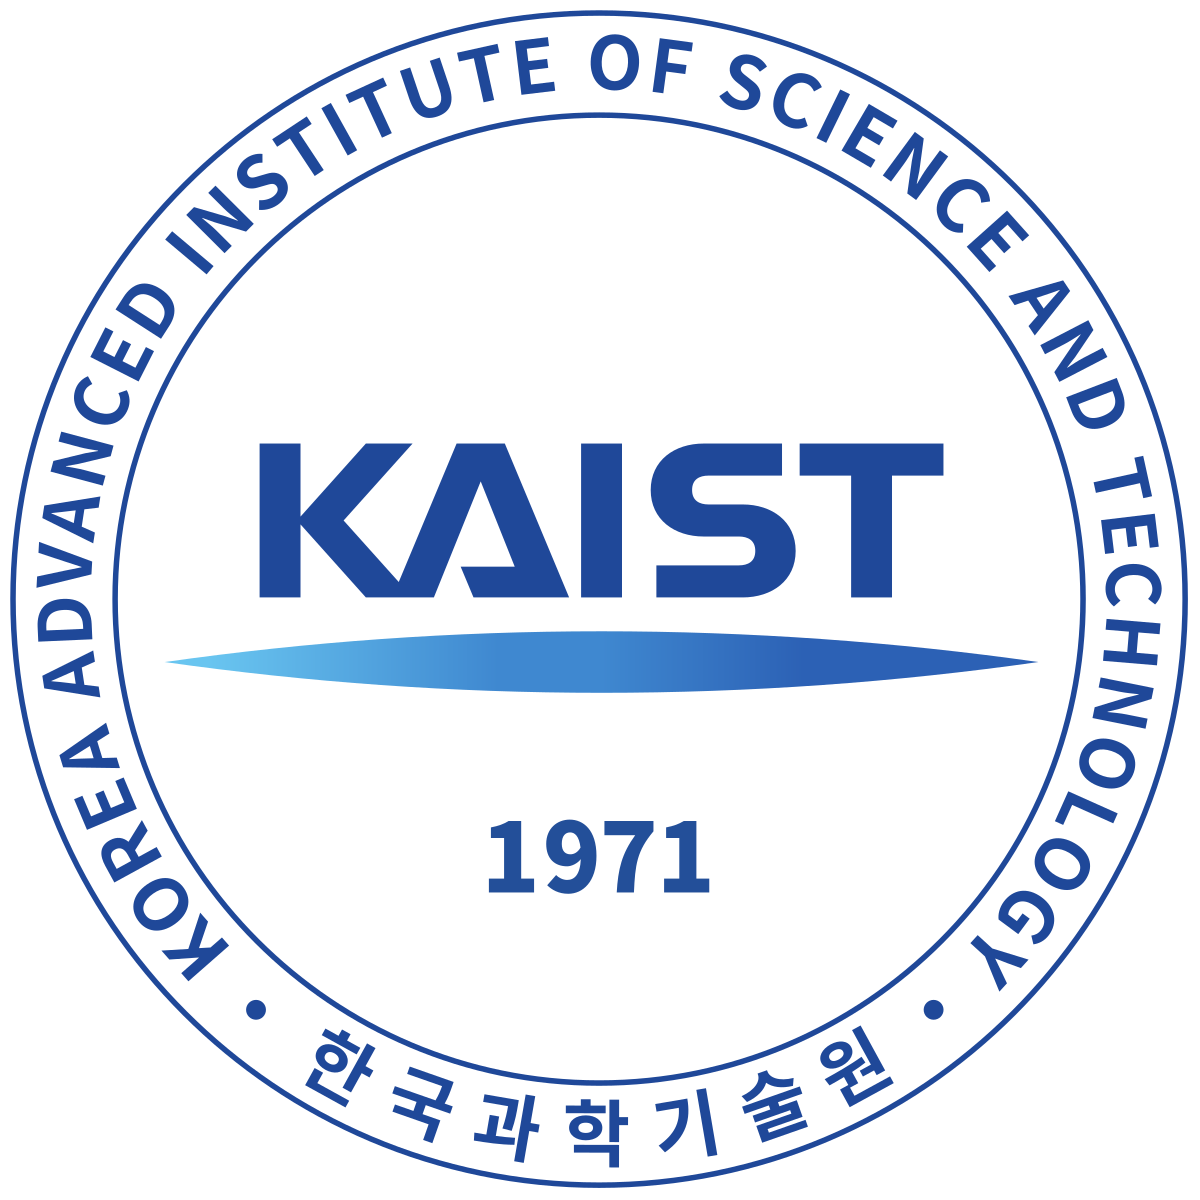 اعلان عن منح مقدمة من الجامعة الكورية المتقدمة للعلوم والتكنولوجيا KAIST للعام الدراسى2021/2022